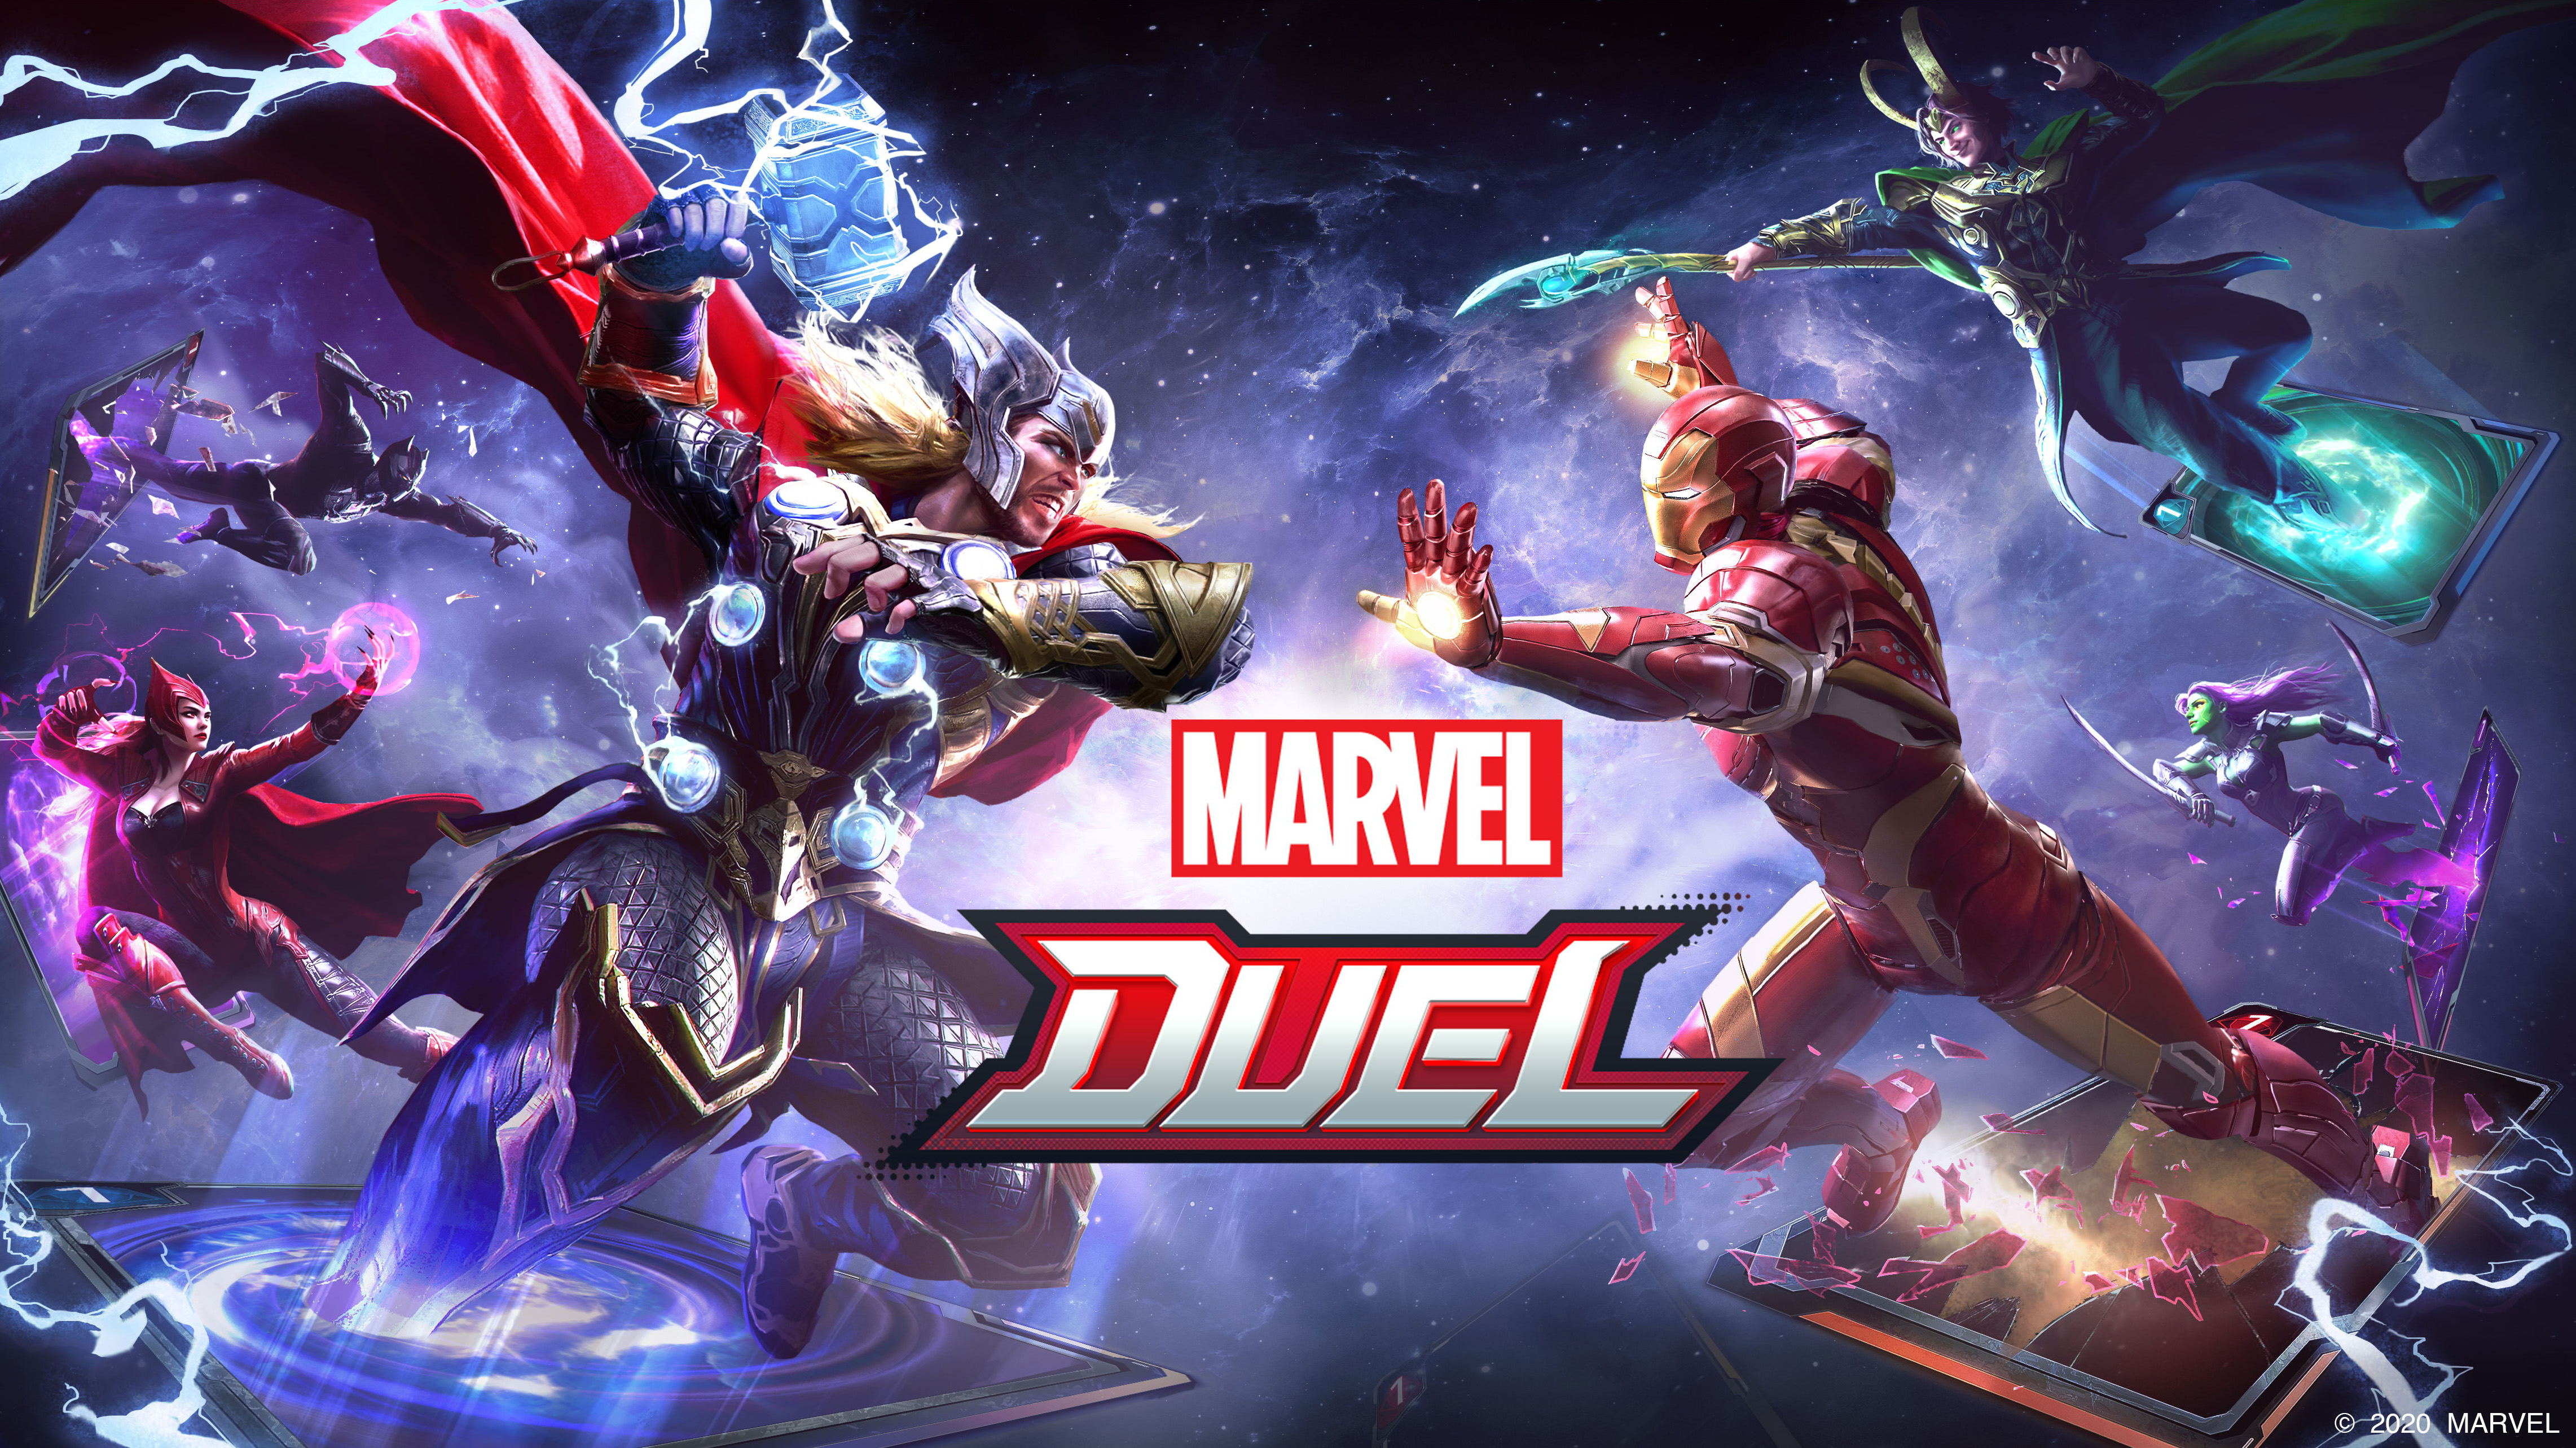 เปิดตัวเกมใหม่ “MARVEL Duel” เกมการ์ดบนมือถือในรูปแบบ Free-to-play พร้อมกำหนดวัน CBT